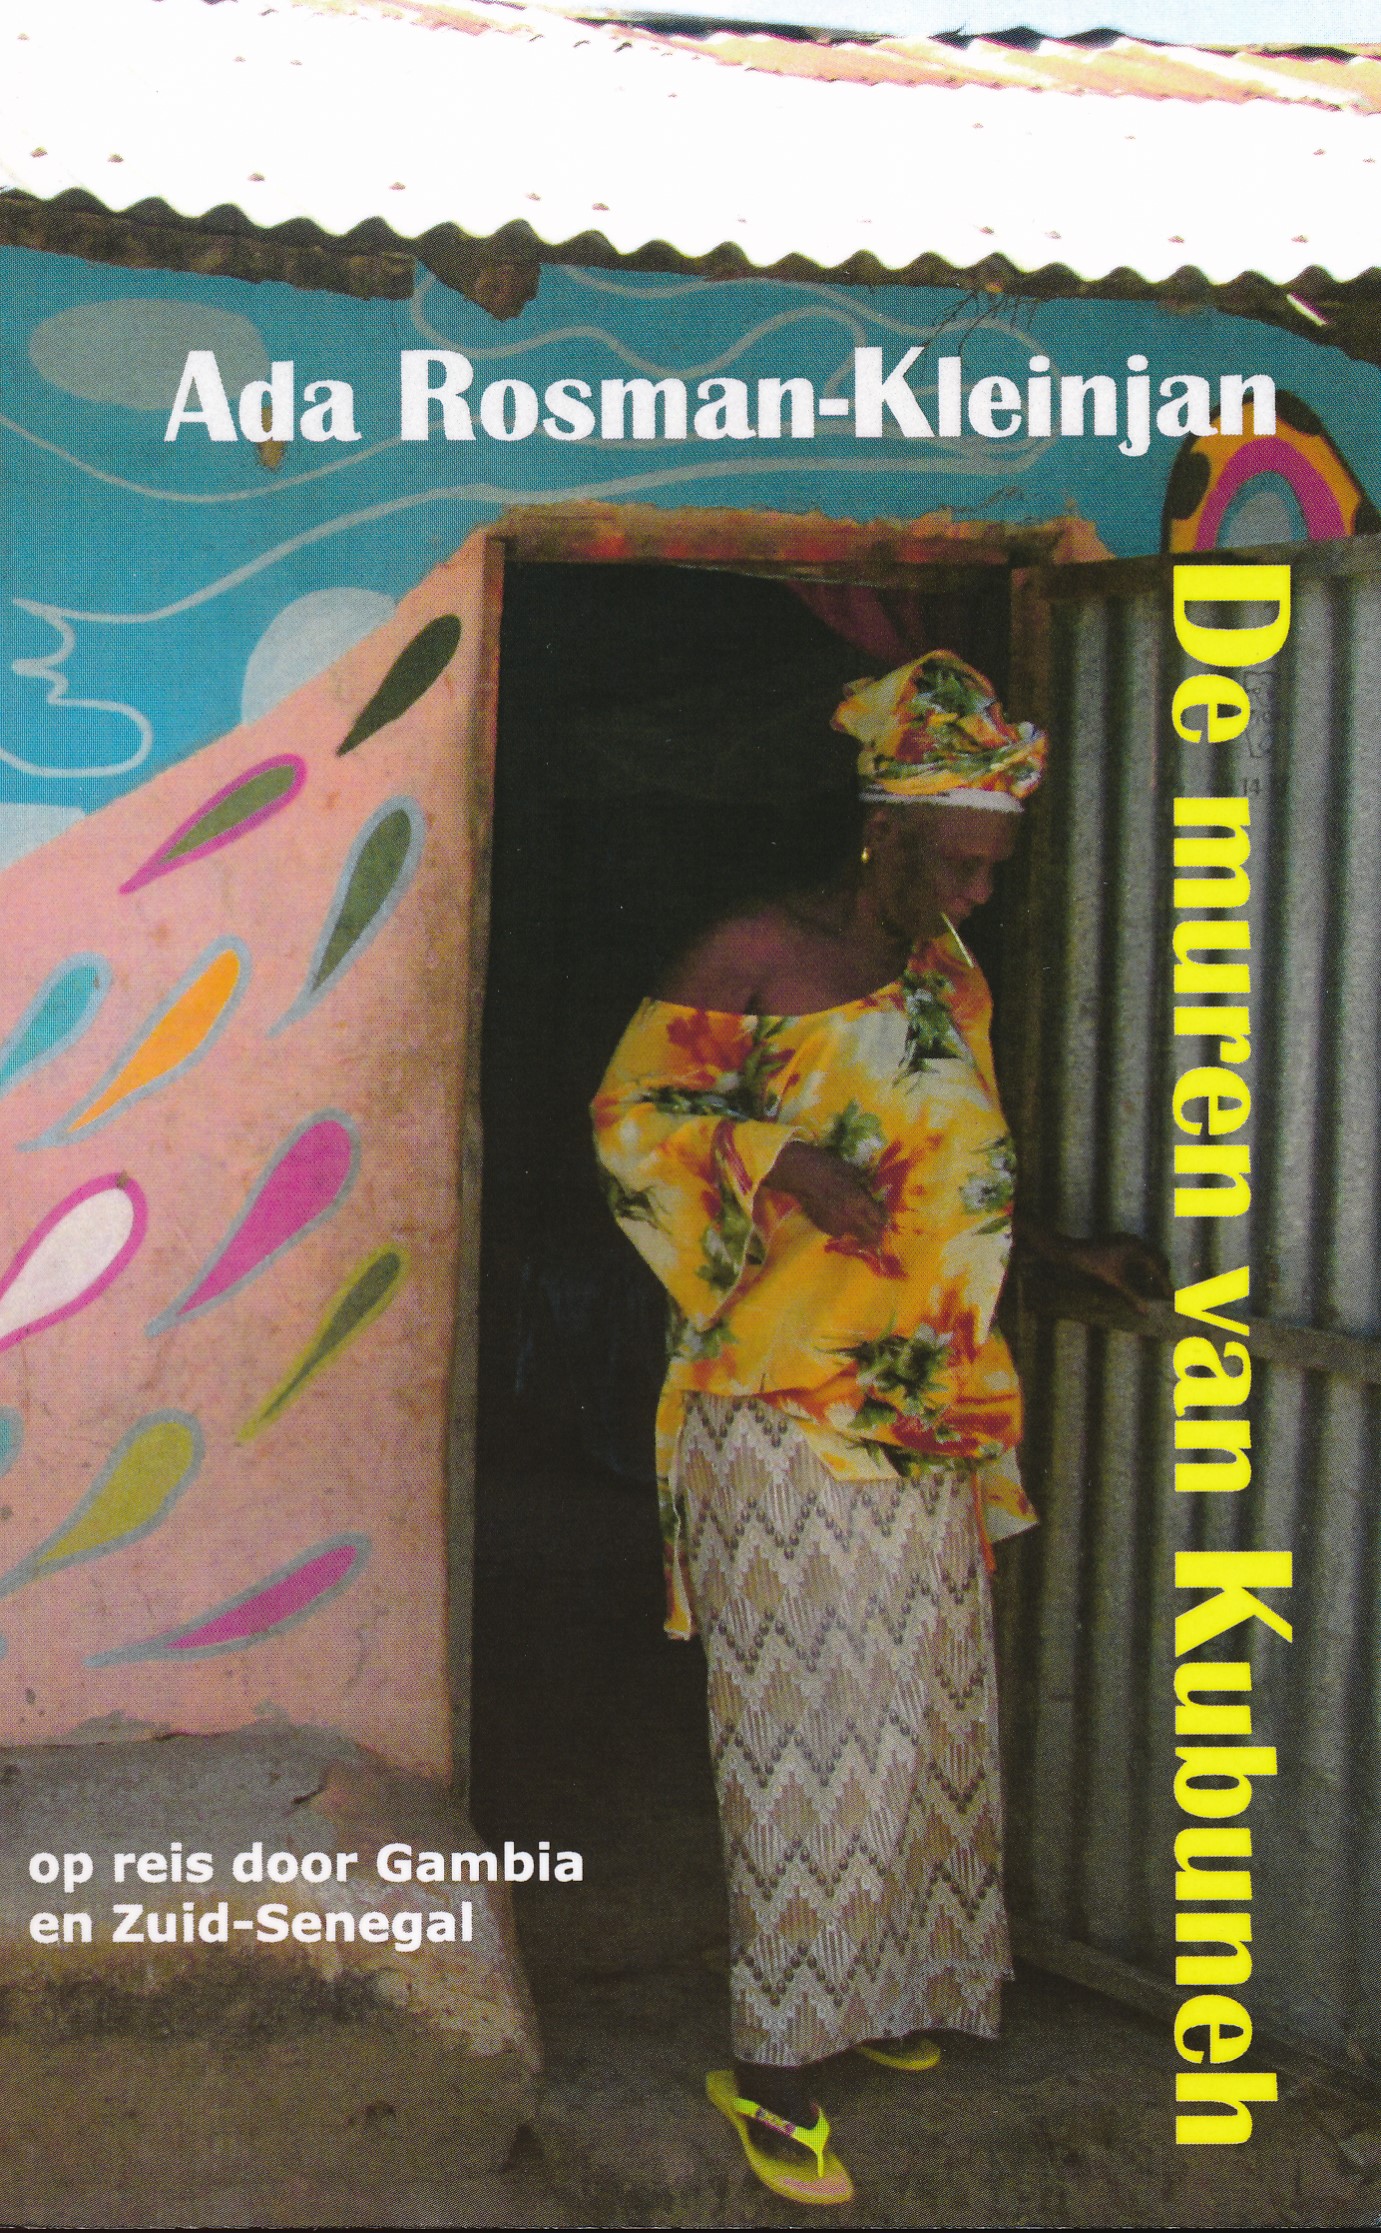 Online bestellen: Reisverhaal De muren van Kubuneh - Gambia en zuid Senegal | Ada Rosman